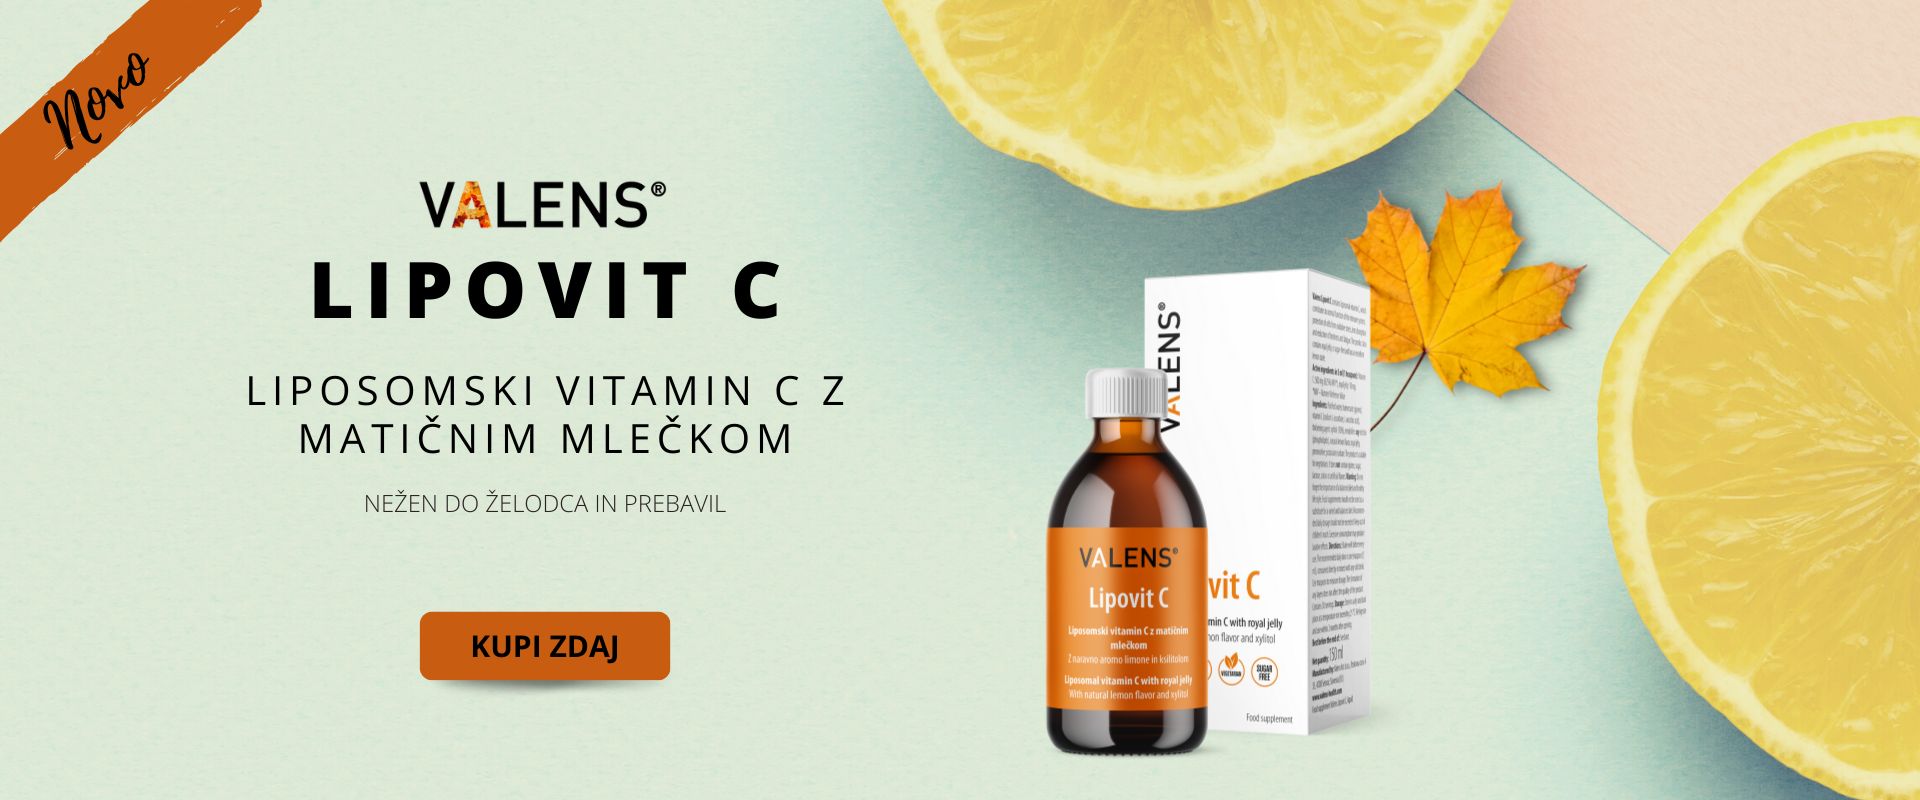 Liposomski vitamin c 